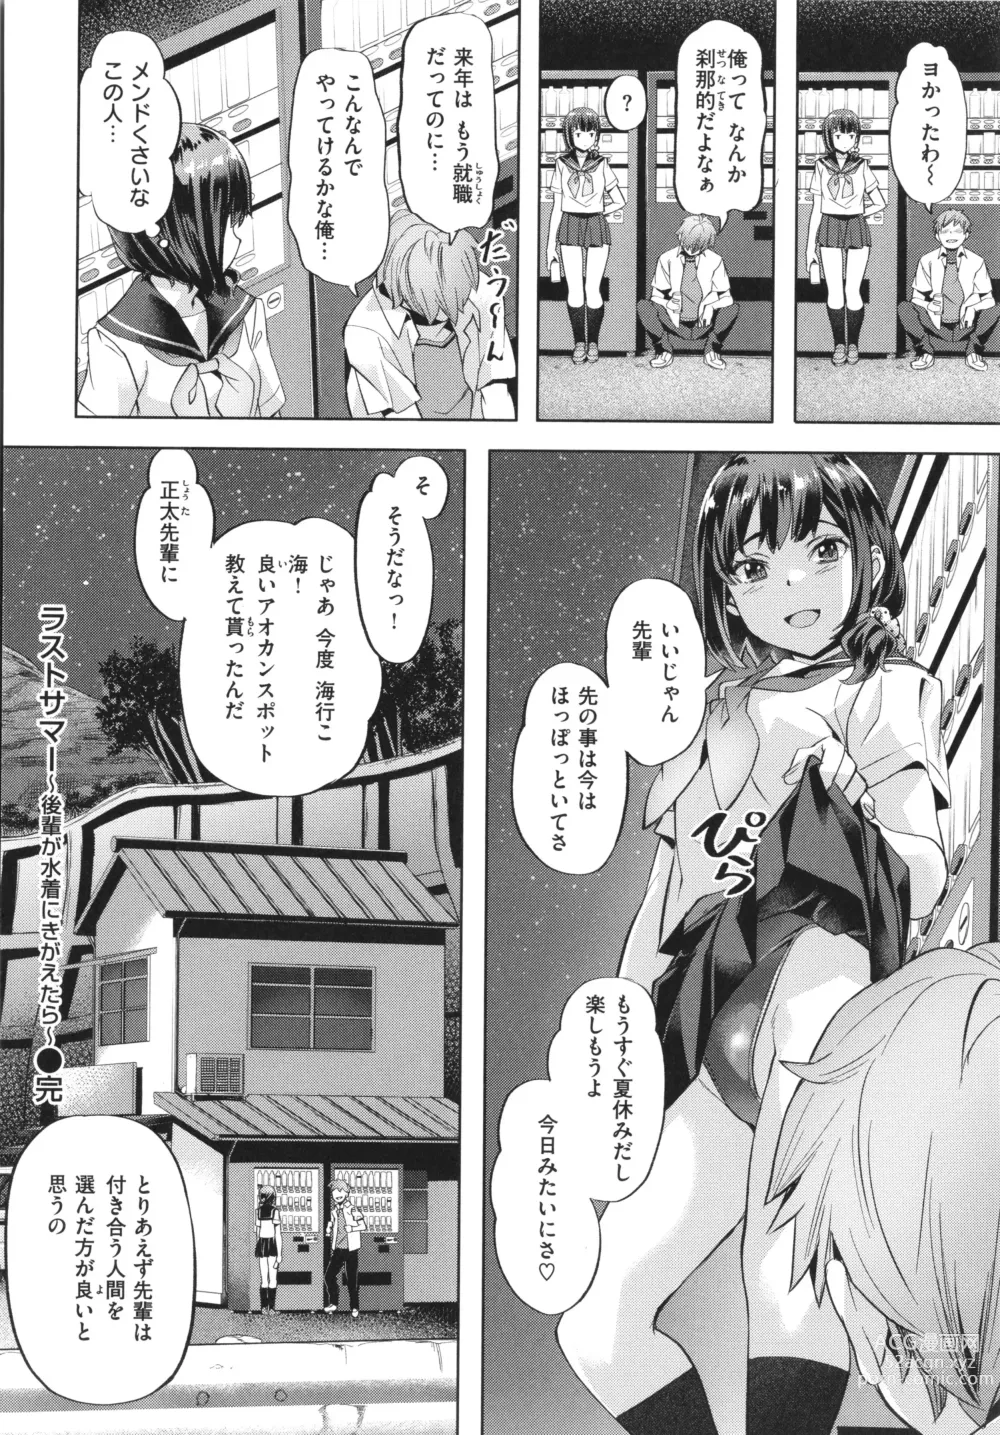 Page 24 of manga Binetsu Emotion - Sensual Emotion